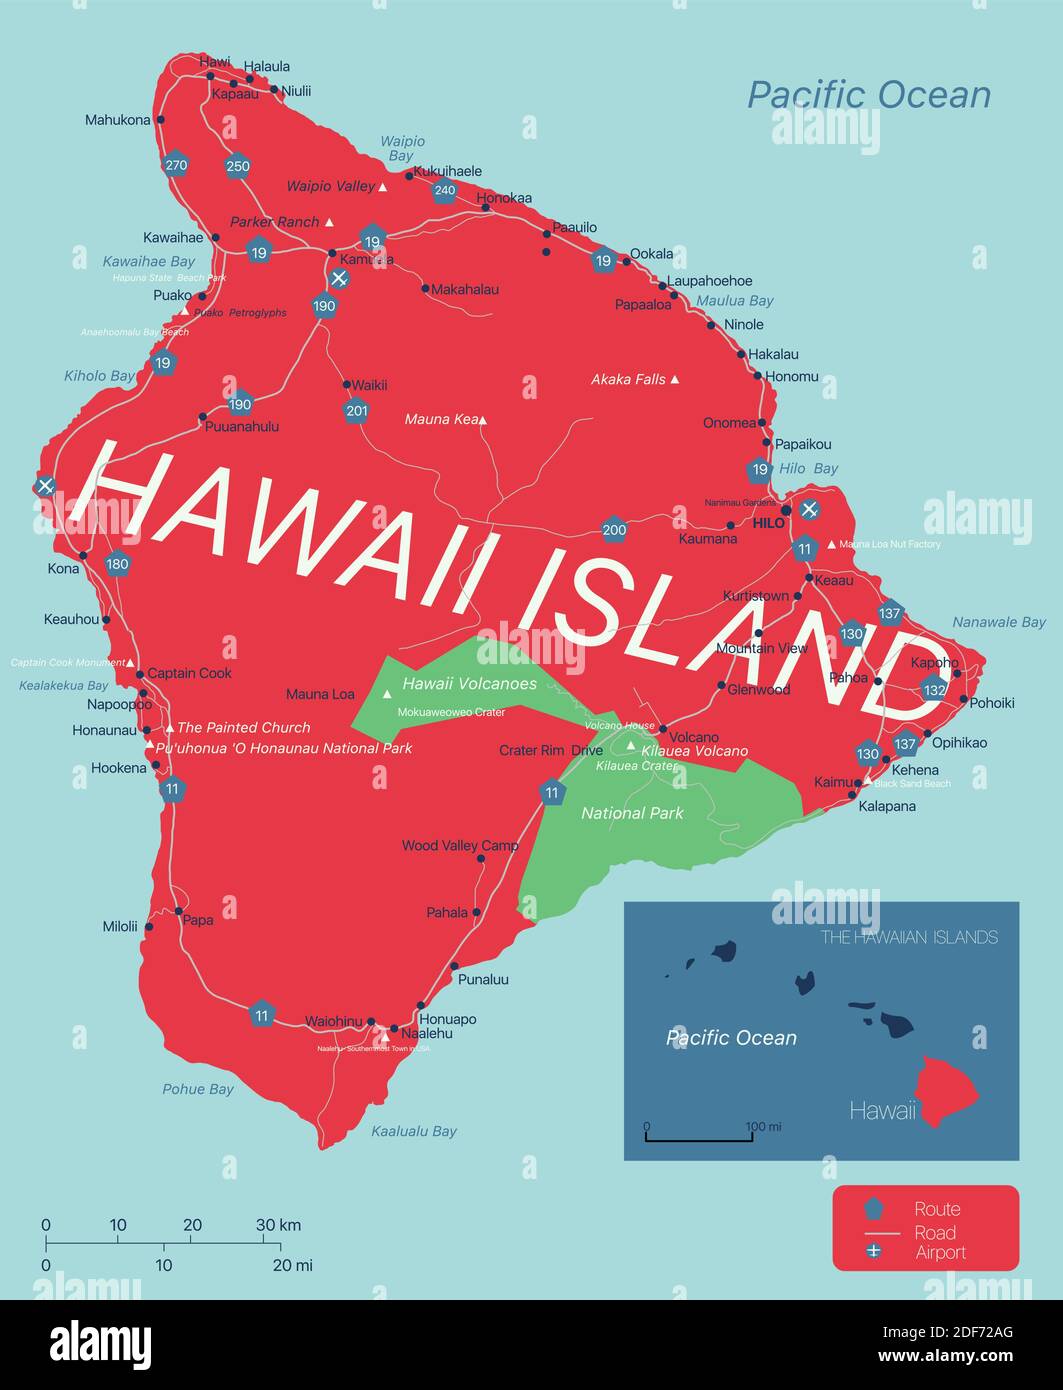 Grande île d'Hawaï carte modifiable détaillée avec des villes, des sites géographiques, des routes, des chemins de fer, des autoroutes et des autoroutes américaines. Vector EPS-10 fi Illustration de Vecteur